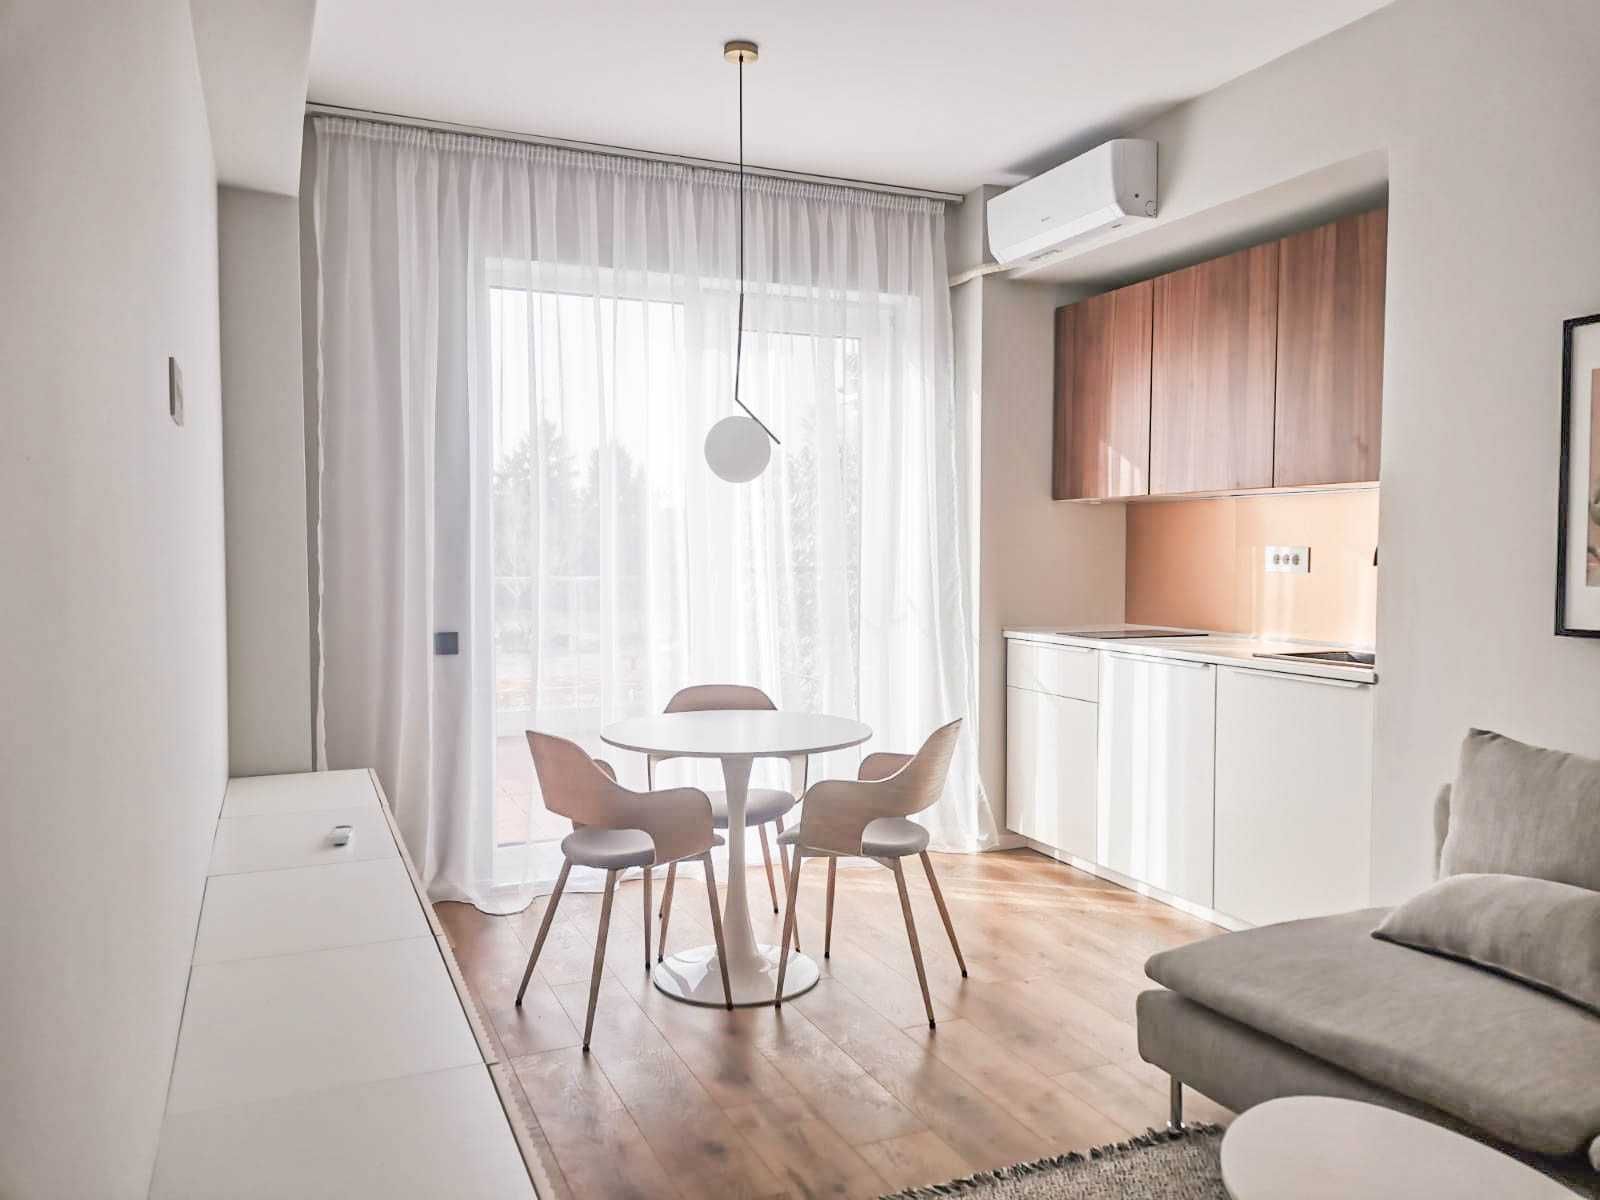 Apartament nou modern cu terasă de închiriat în cartierul Luceafărul